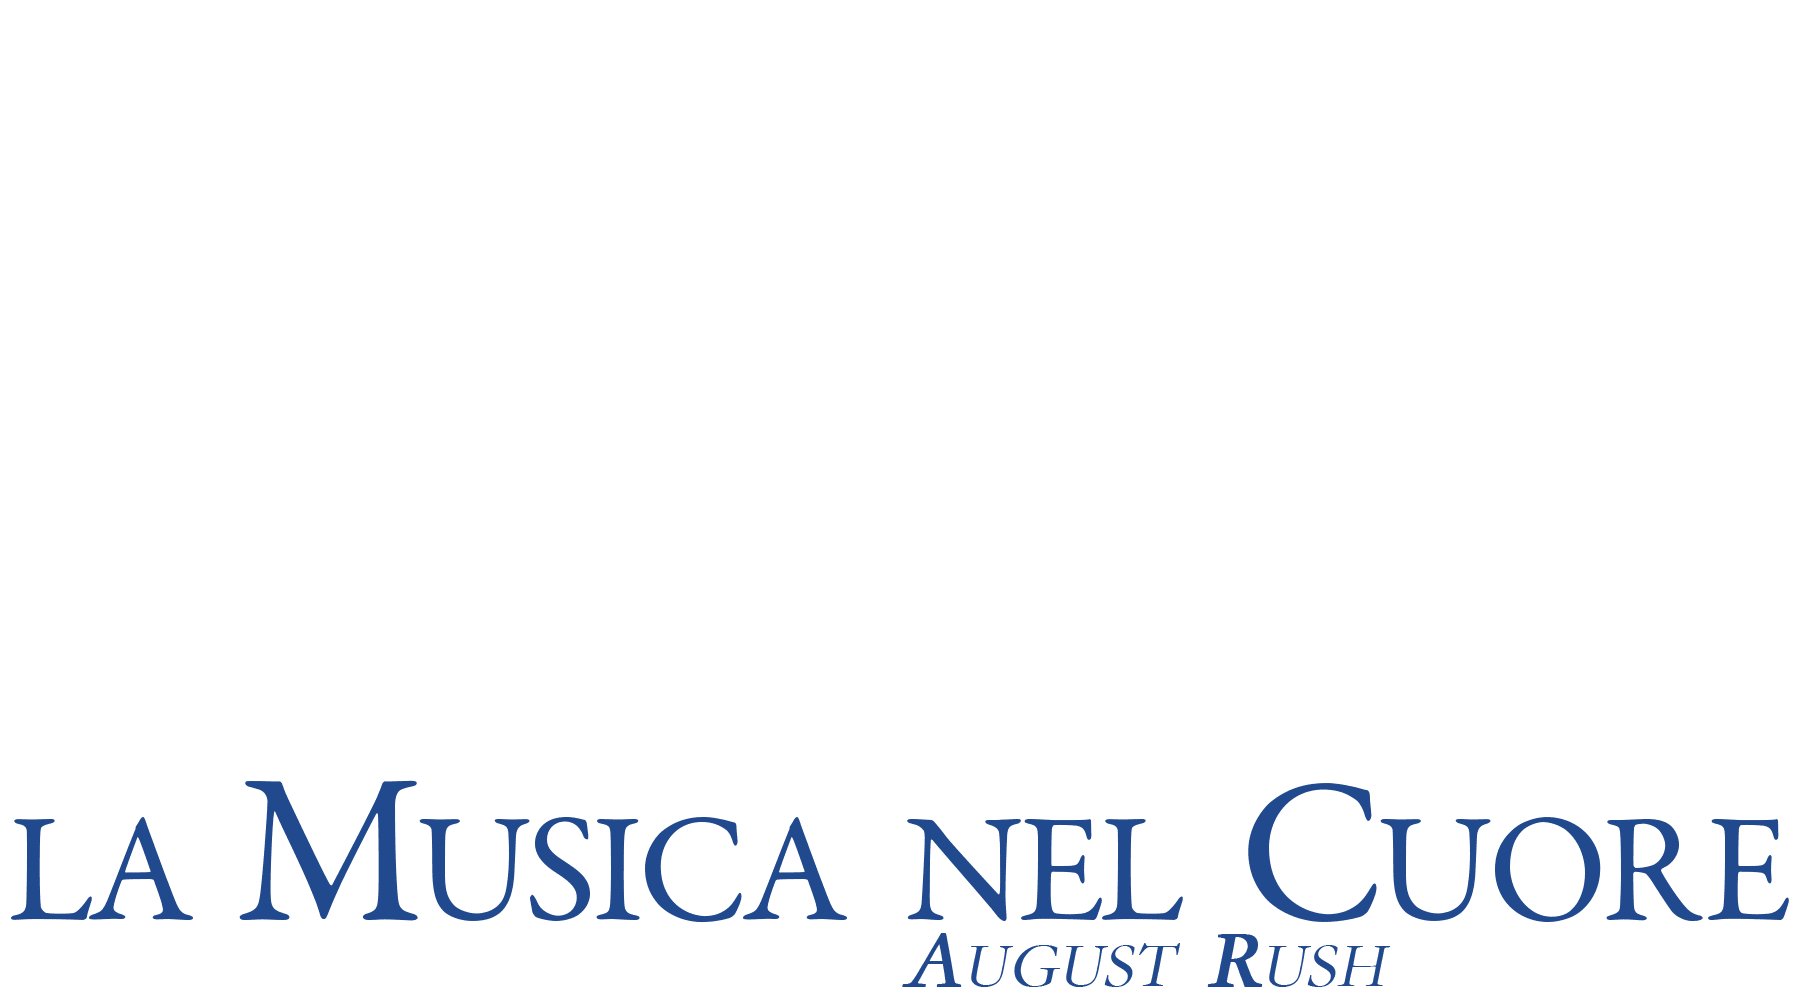 La musica nel cuore - August Rush